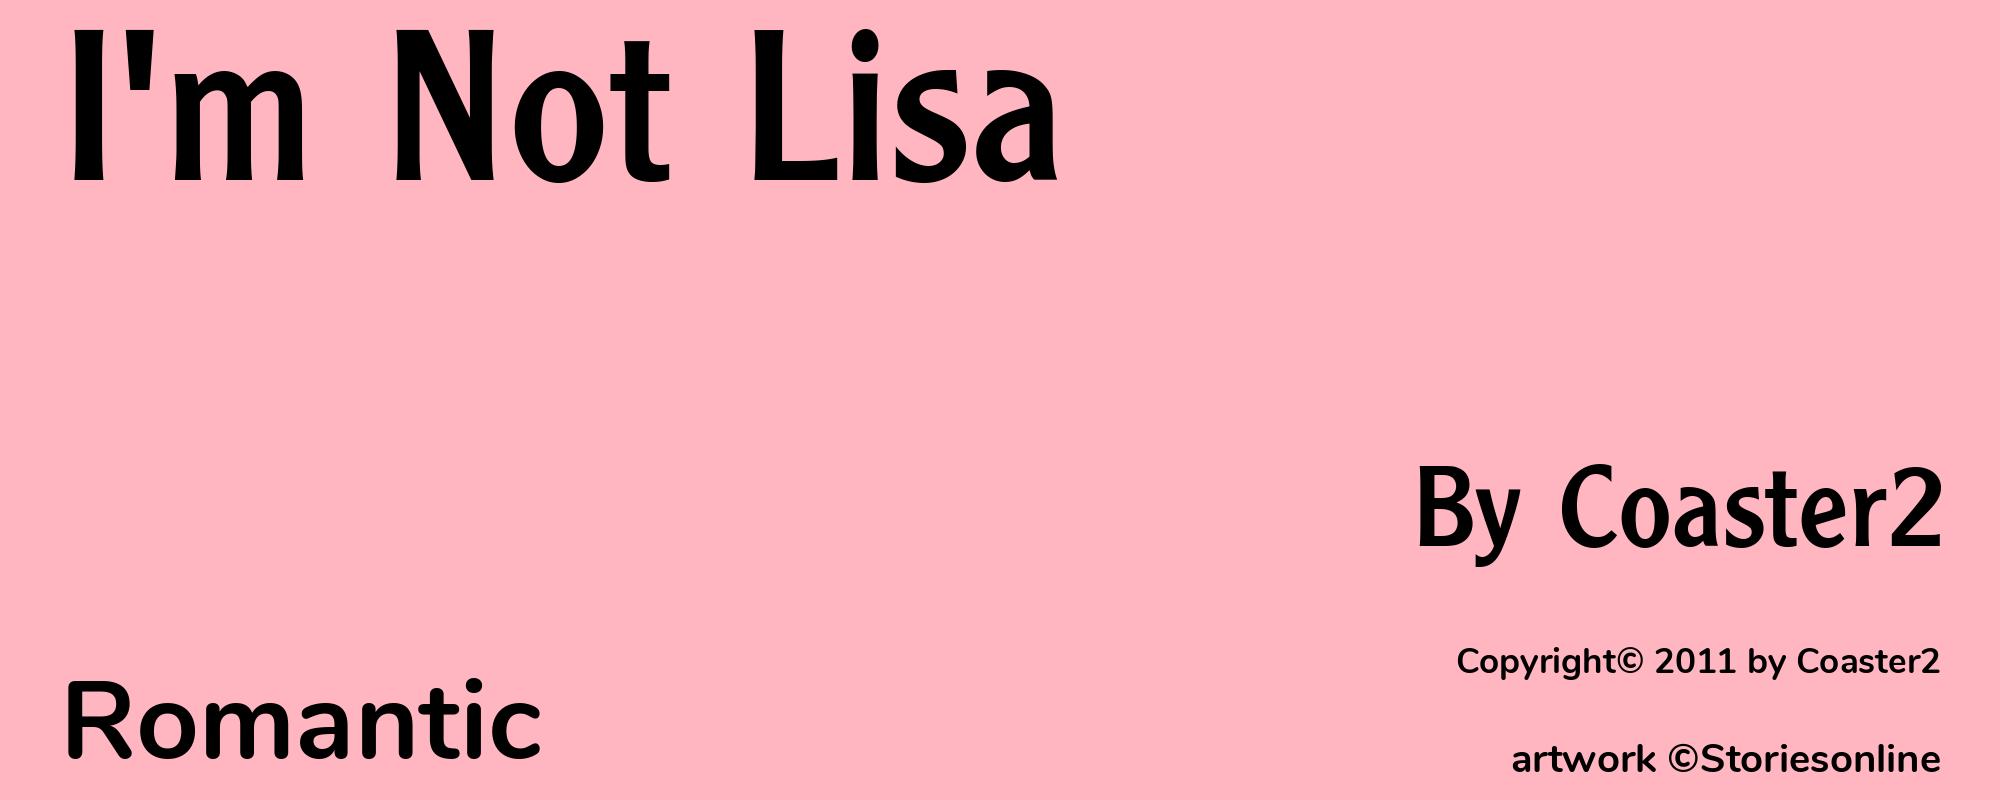 I'm Not Lisa - Cover